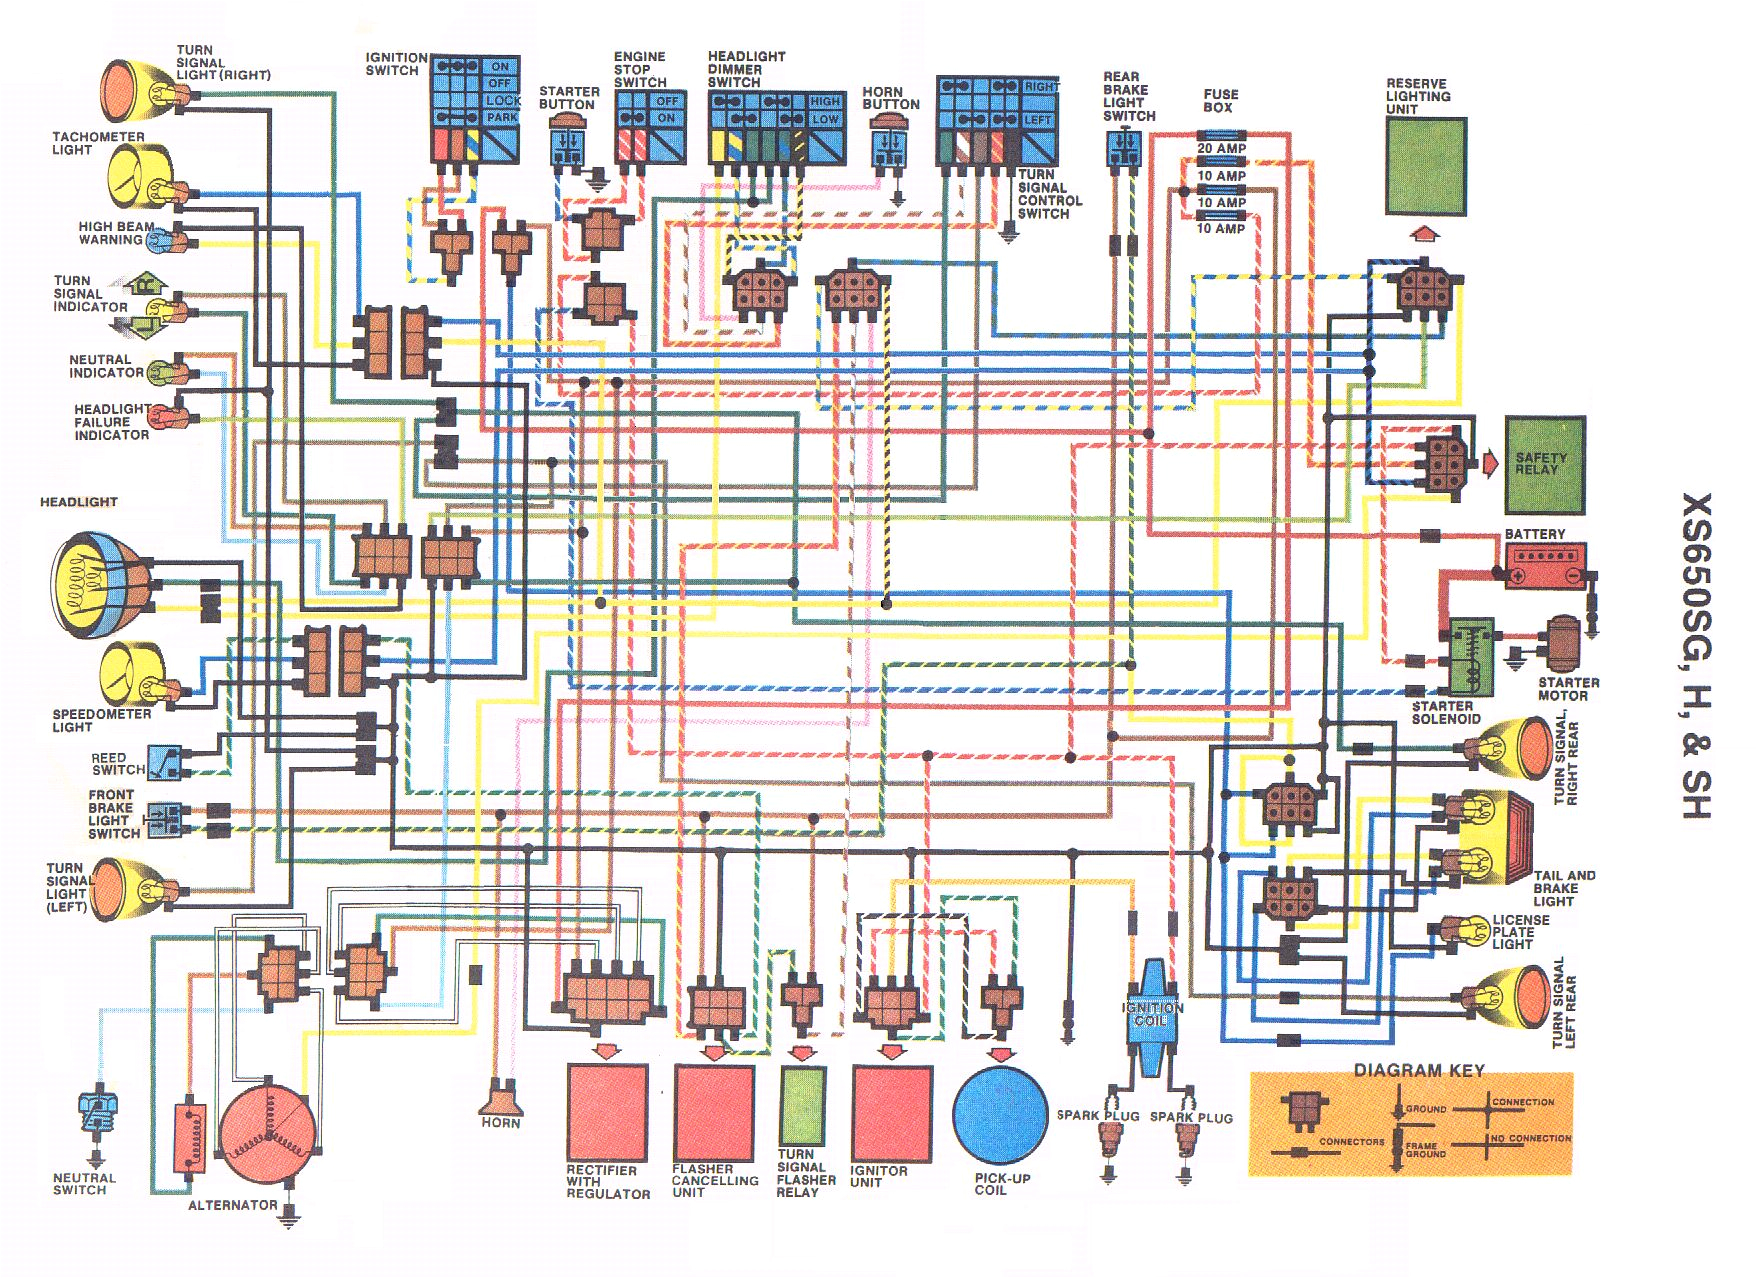 yamaha 650 wiring diagram wiring diagram world xs650 chopper wiring diagrams v star 650 wiring diagram